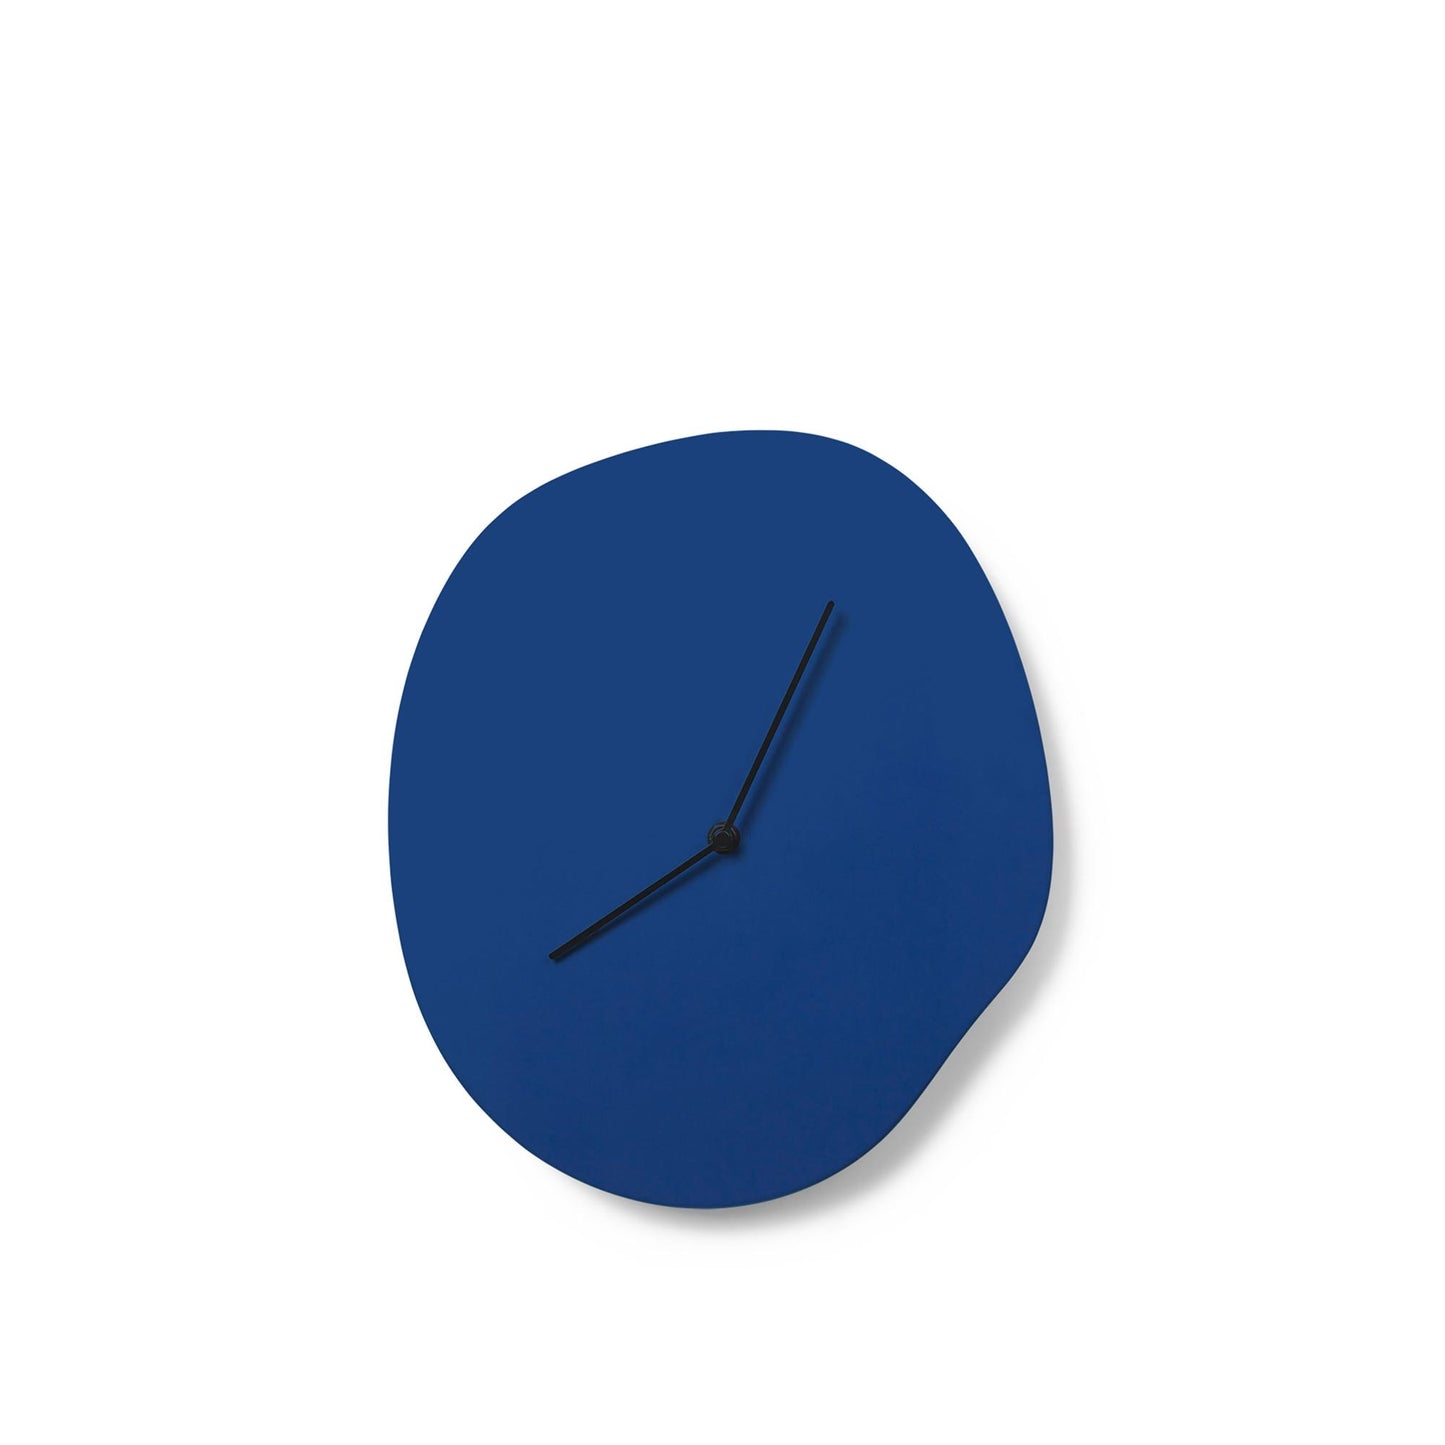 Melt Wall Clock by Ferm Living #Blue